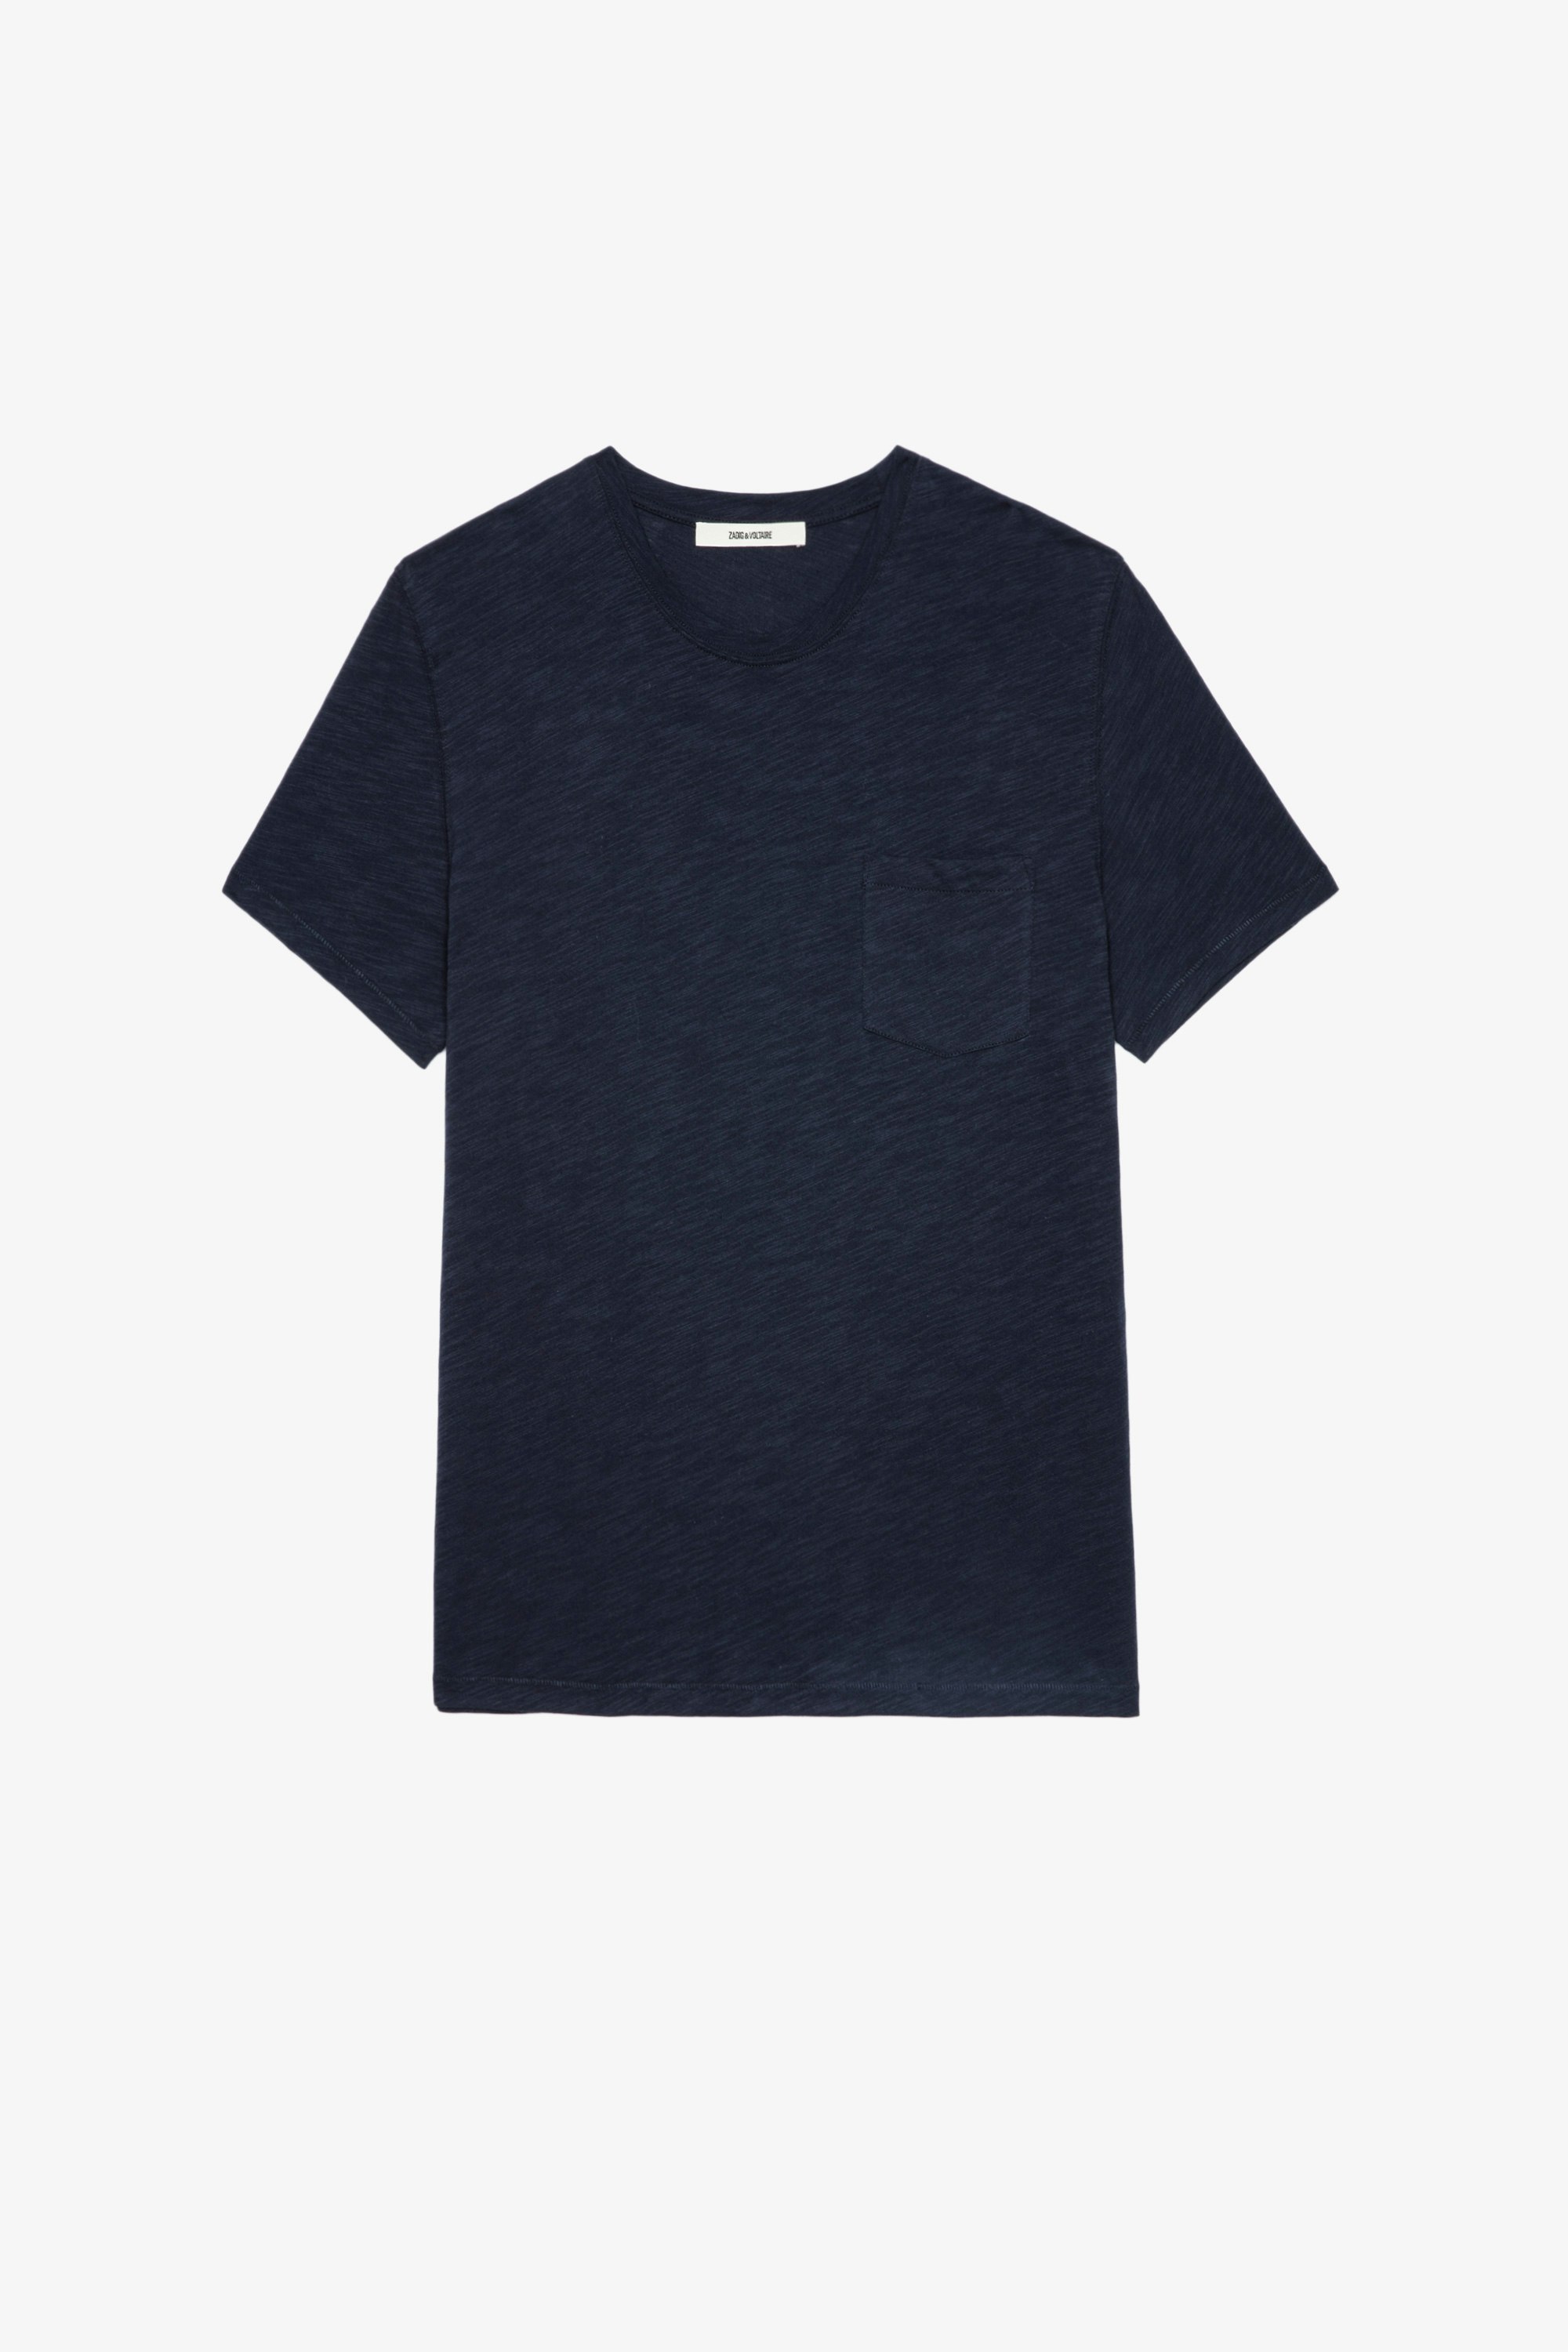 T-shirt Stockholm fiammato T-shirt in cotone fiammato blu navy con tasta applicata e teschio floccato sul retro - Uomo